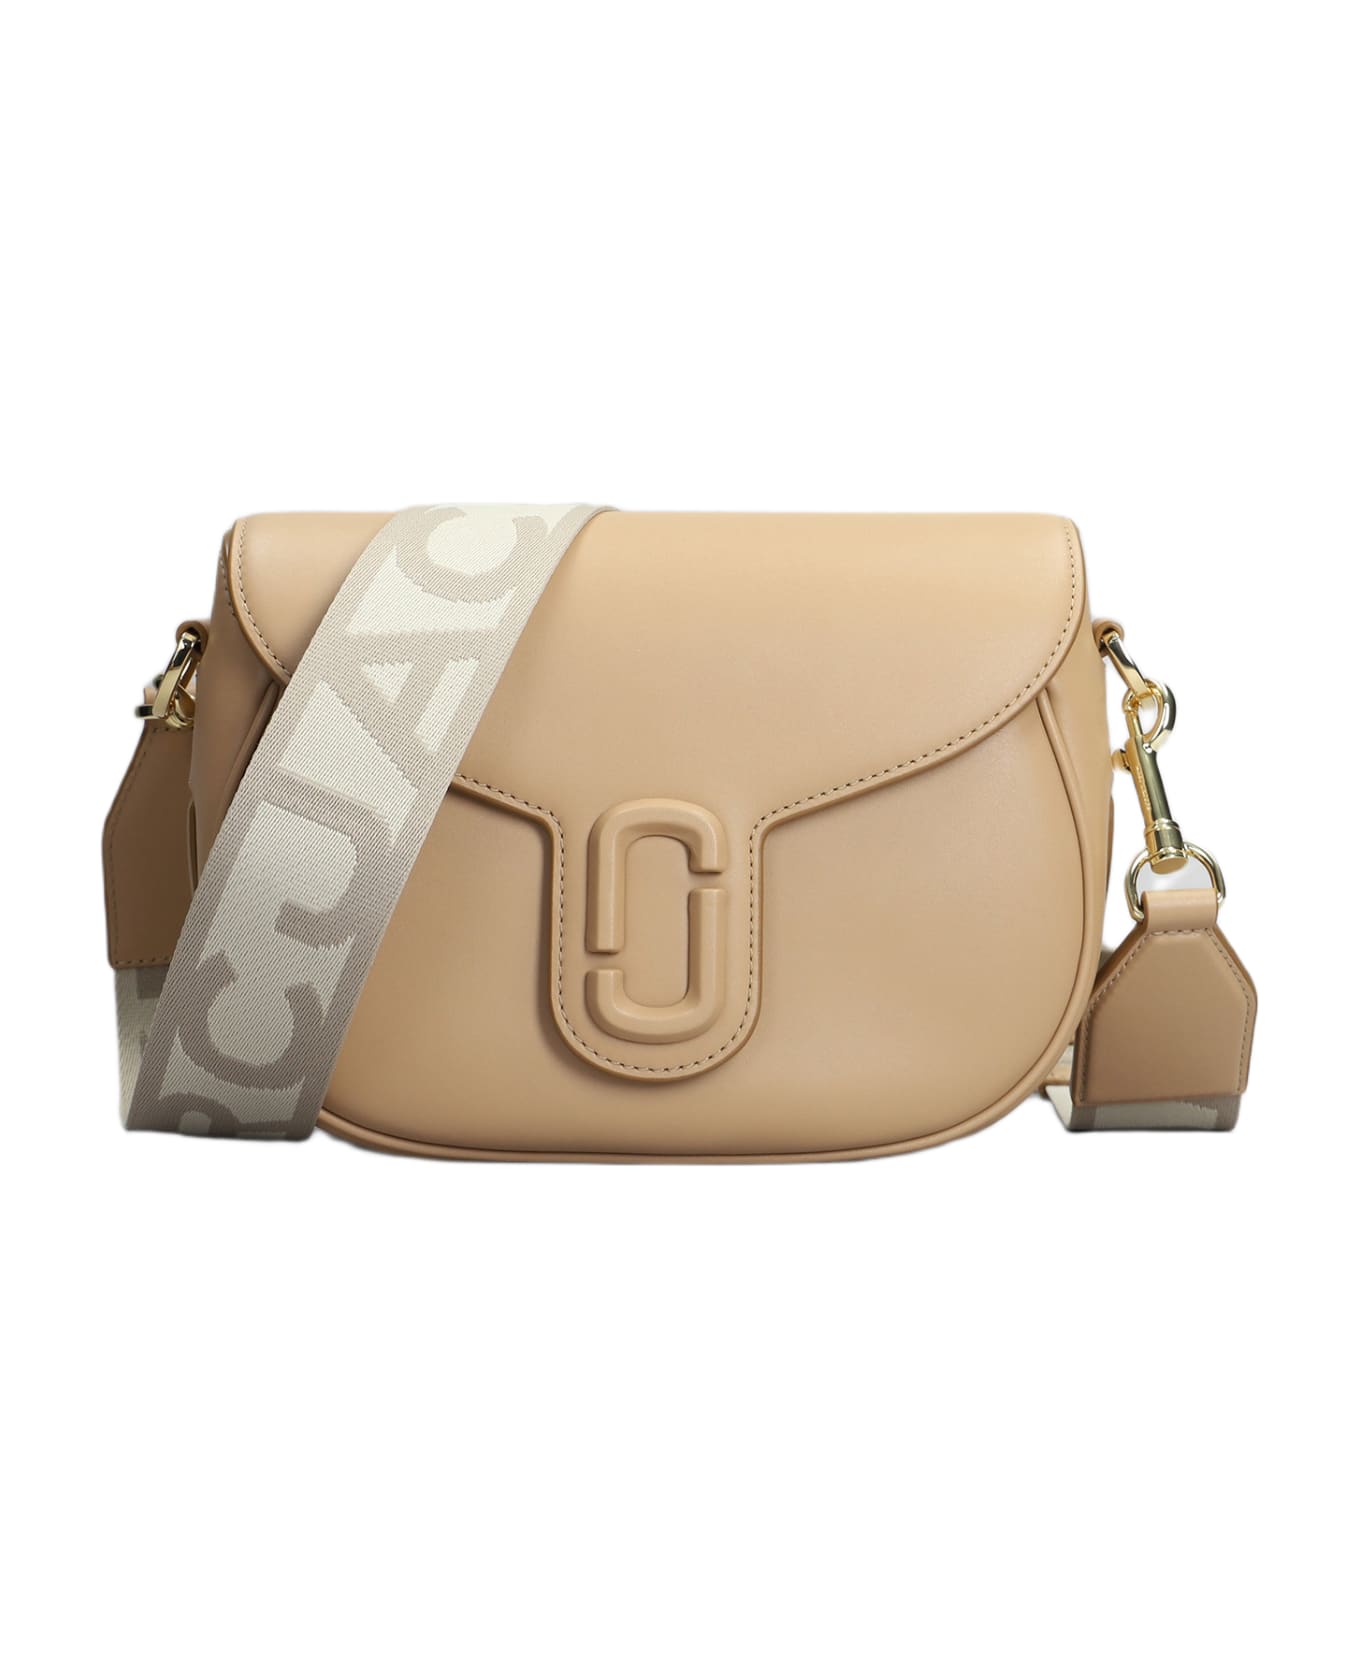 Marc Jacobs Shoulder Bag In Camel Leather - Camel トートバッグ